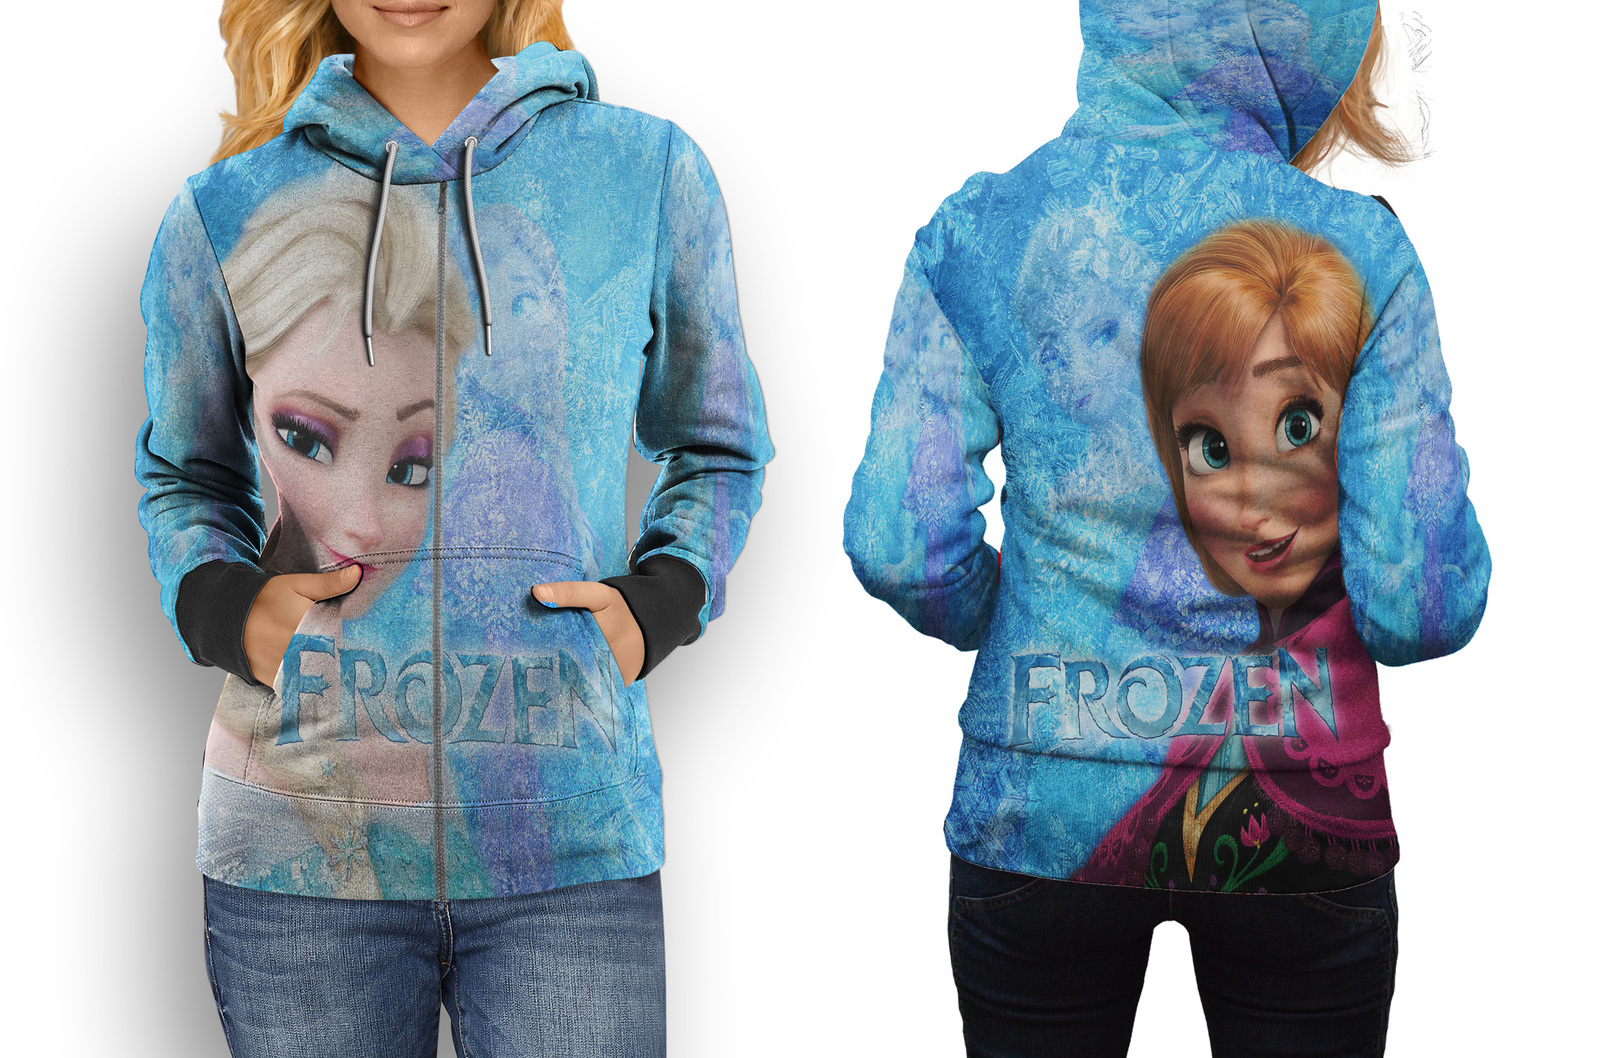 Frozen - Anna and Elsa Zipper Hoodie for Women - Sweatshirts, Hoodies